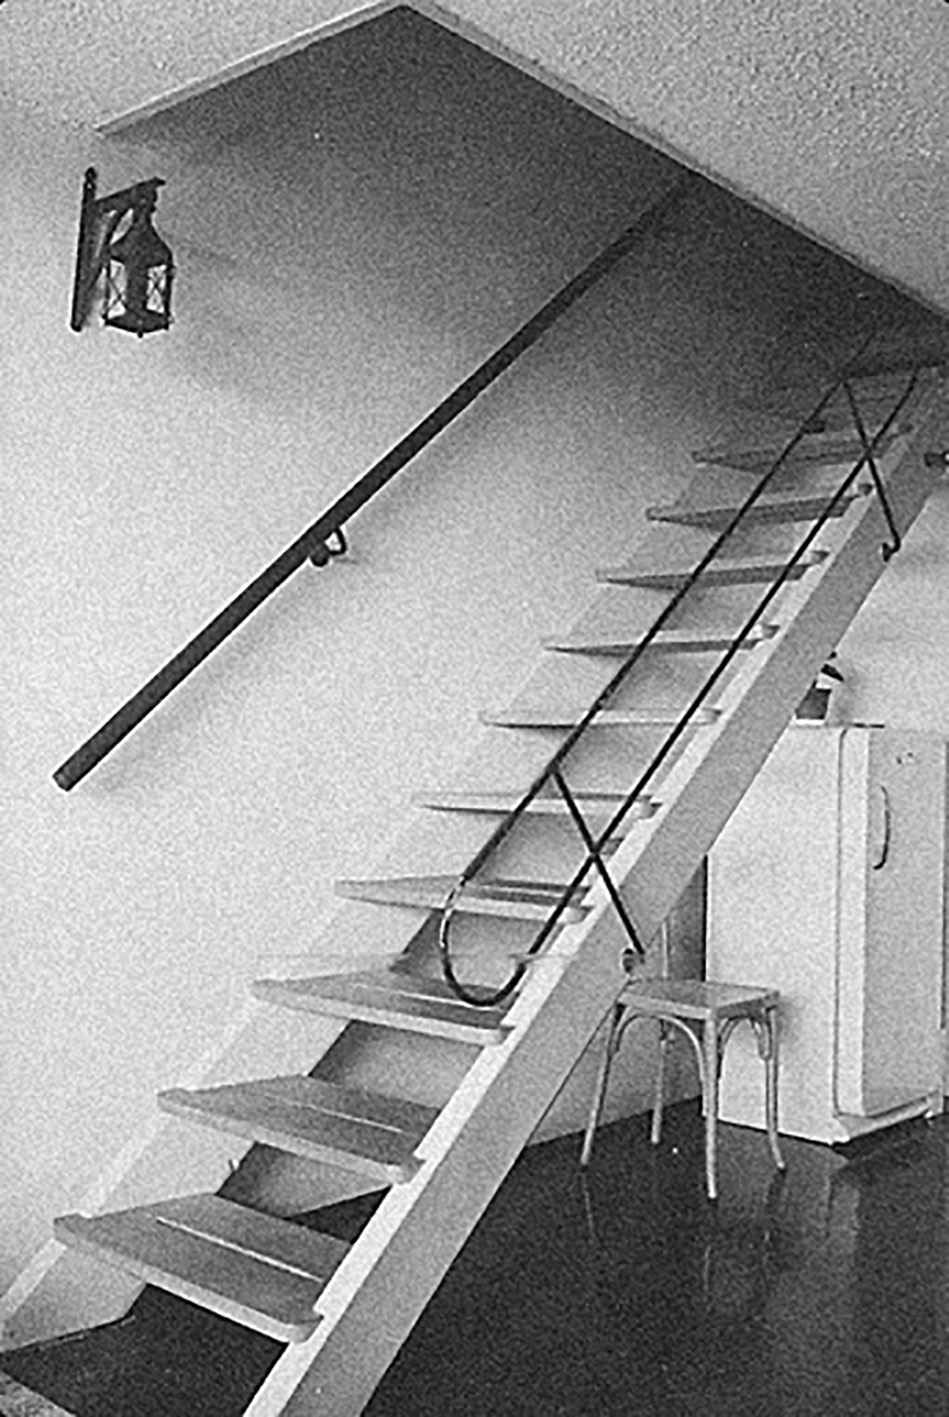 Escaliers, Unité d’habitation, Marseille, 1949 (Le Corbusier, arch.). Limons en tôle d’acier pliée, rampe en tube et marche en bois.